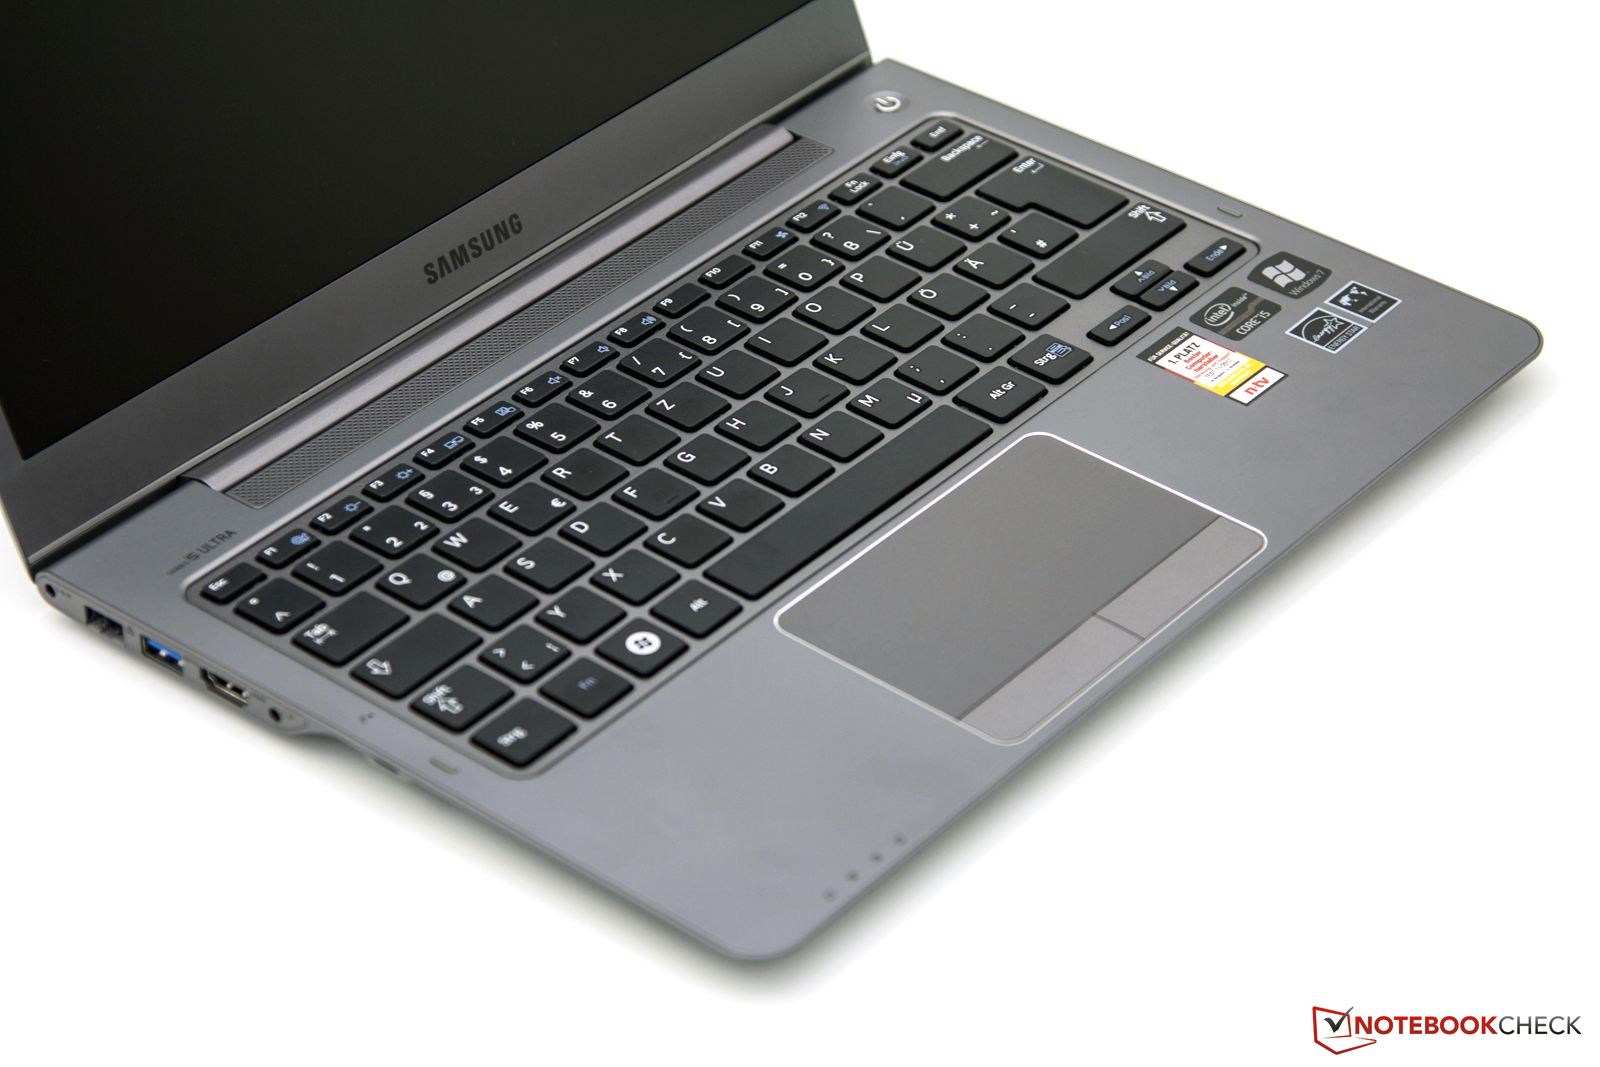 Купить Ноутбук Samsung Np530u3c